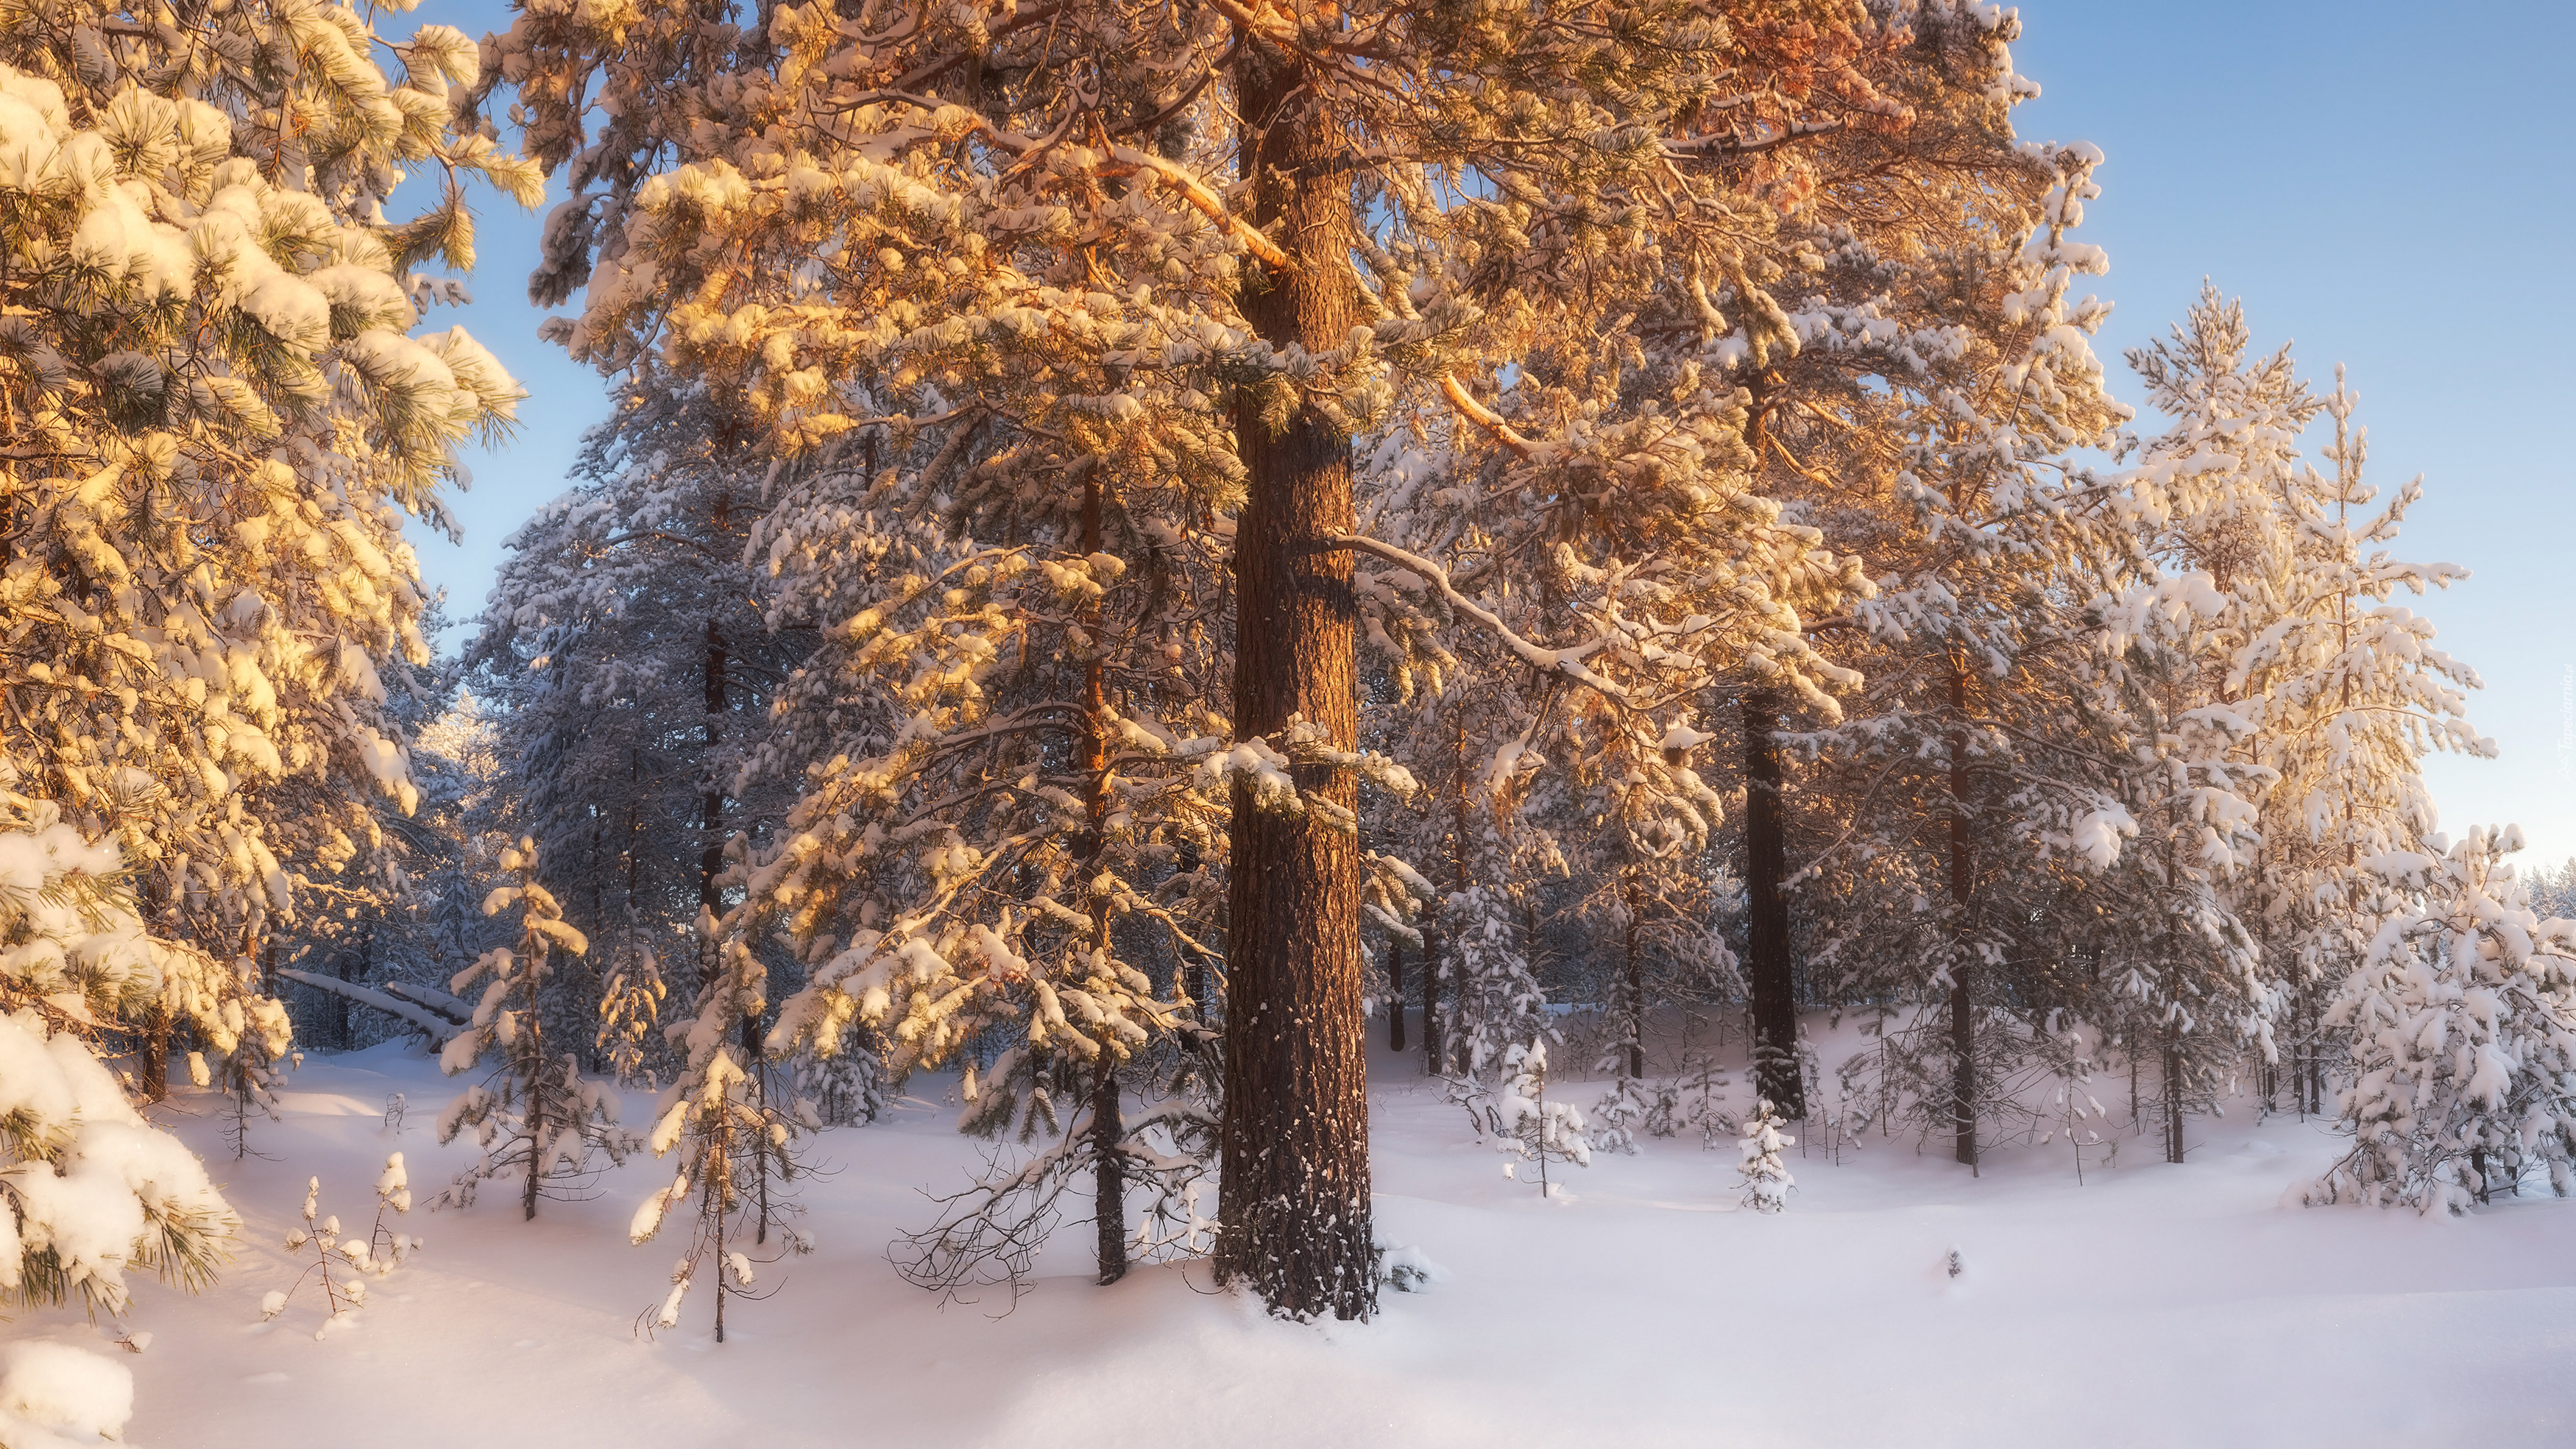 Zima, Śnieg, Drzewa, Las iglasty